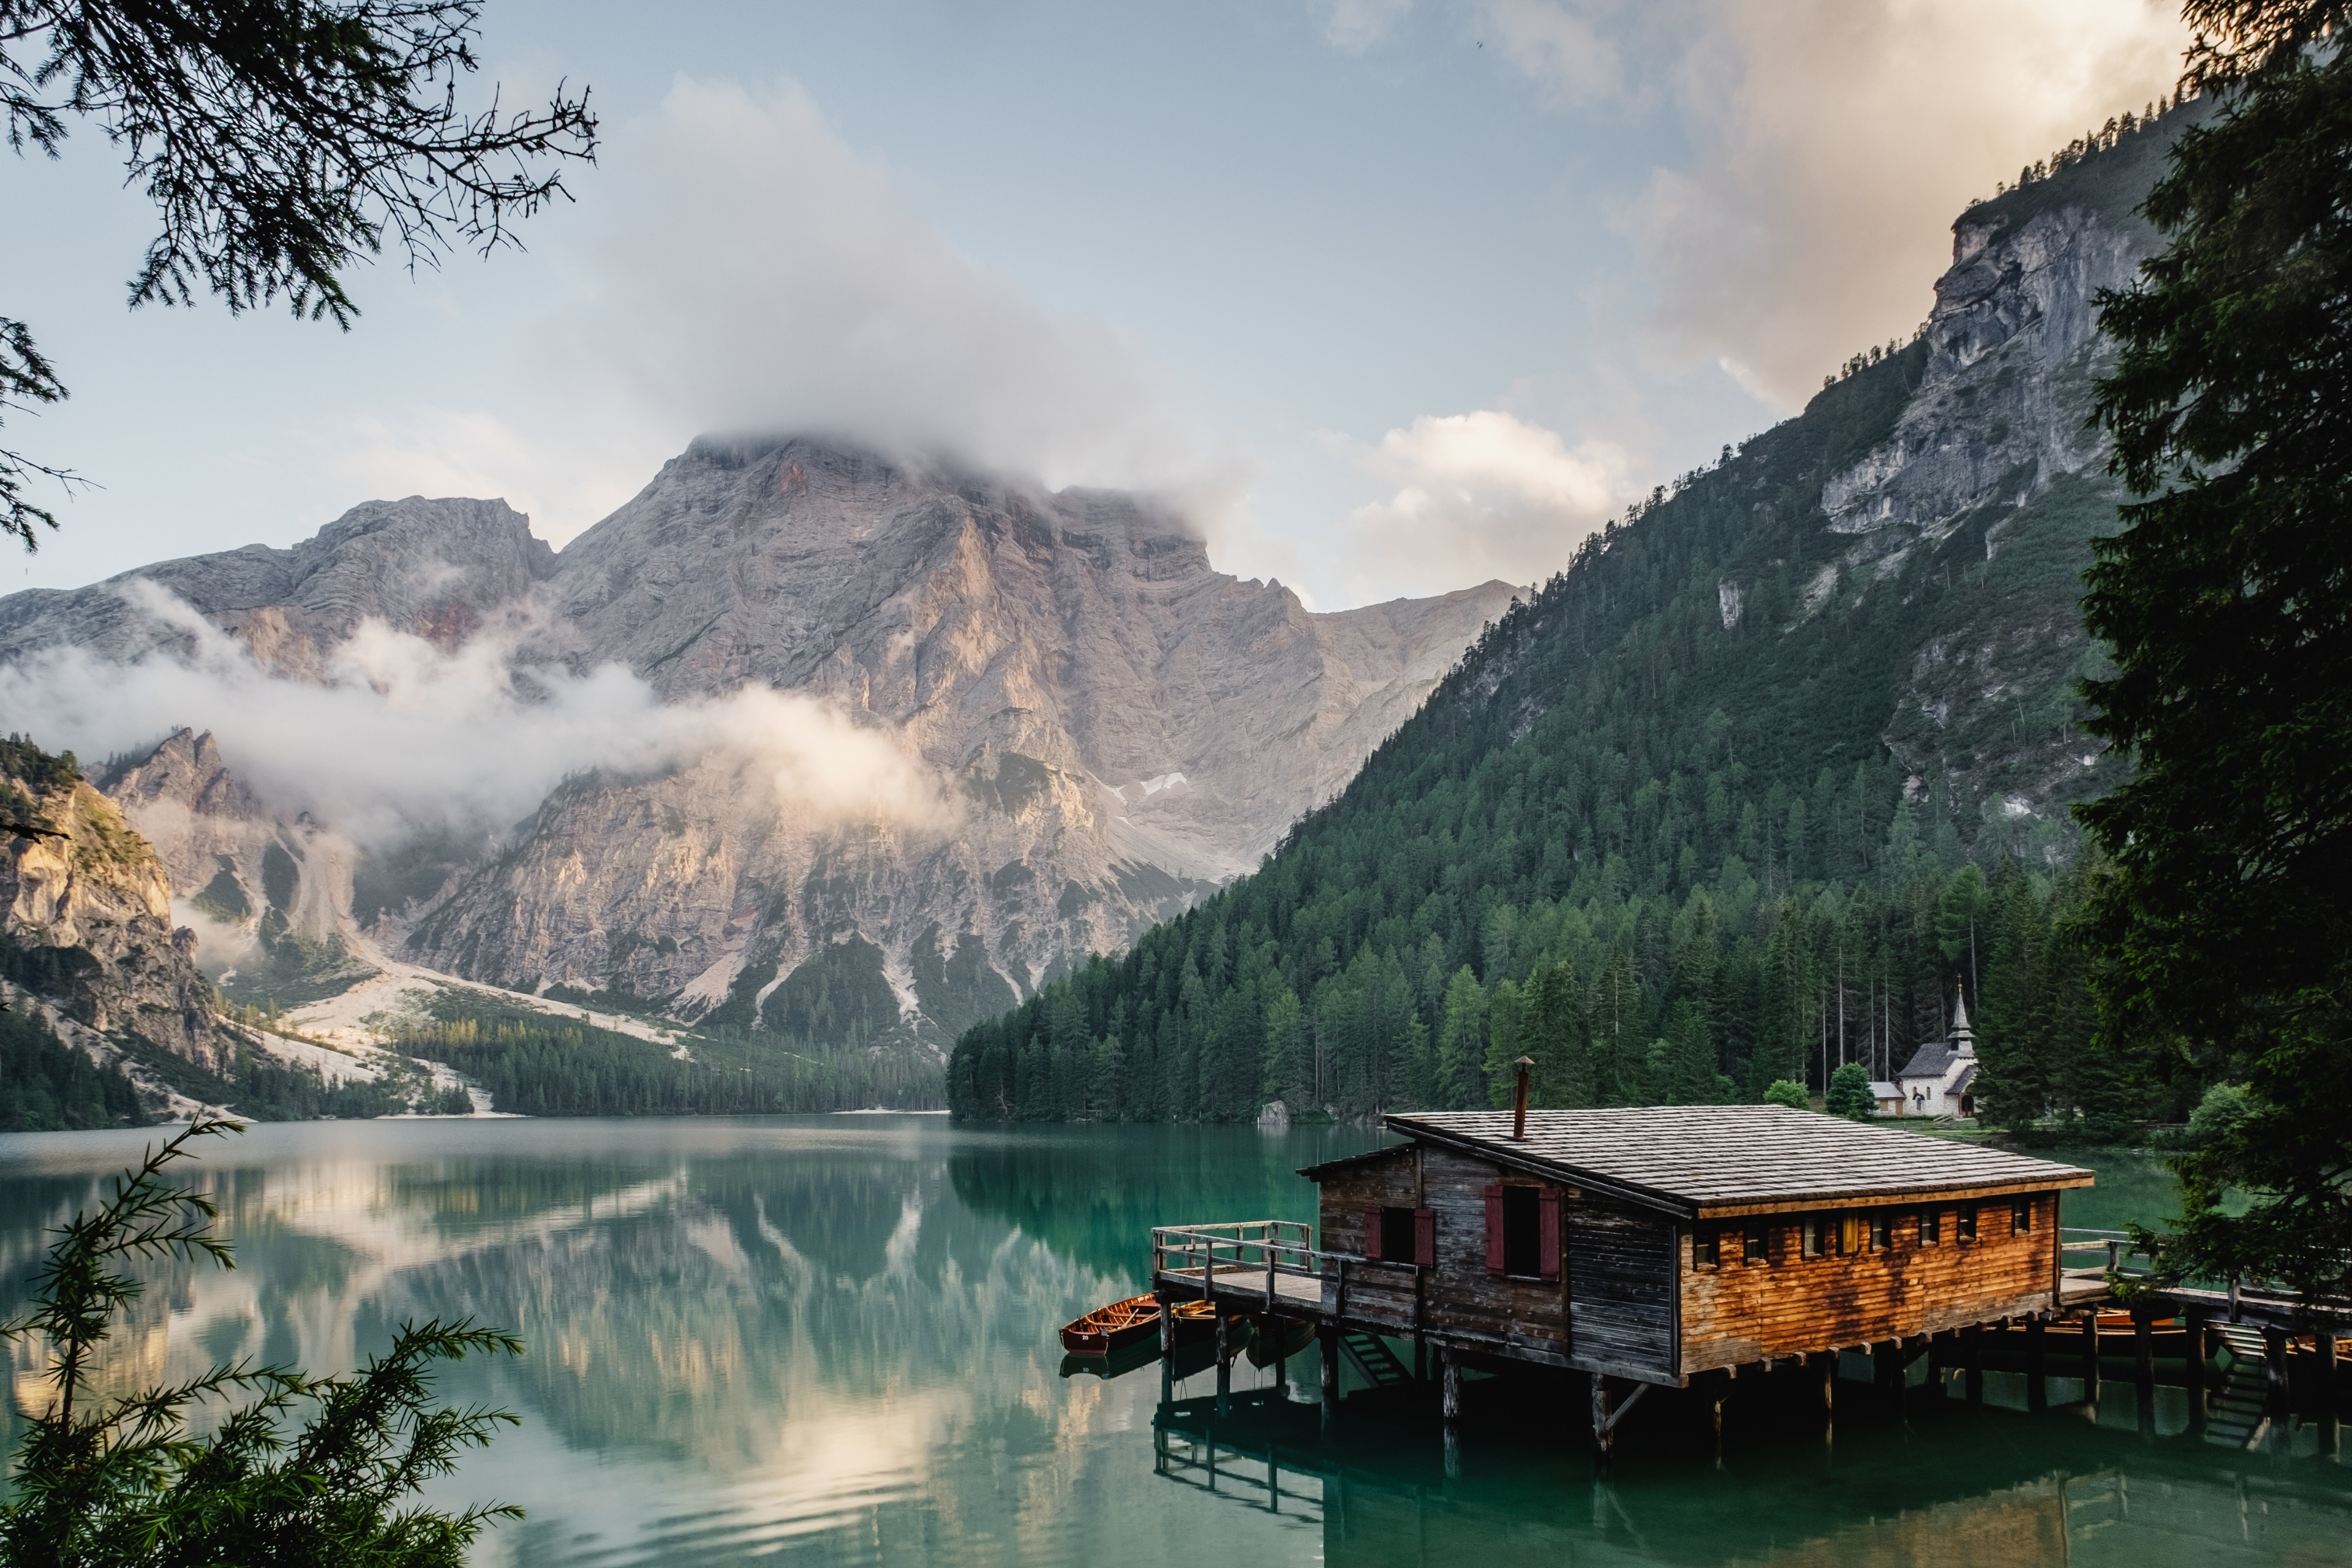 Lac de Braies, Braies, Trentin-Haut-Adige, Italie